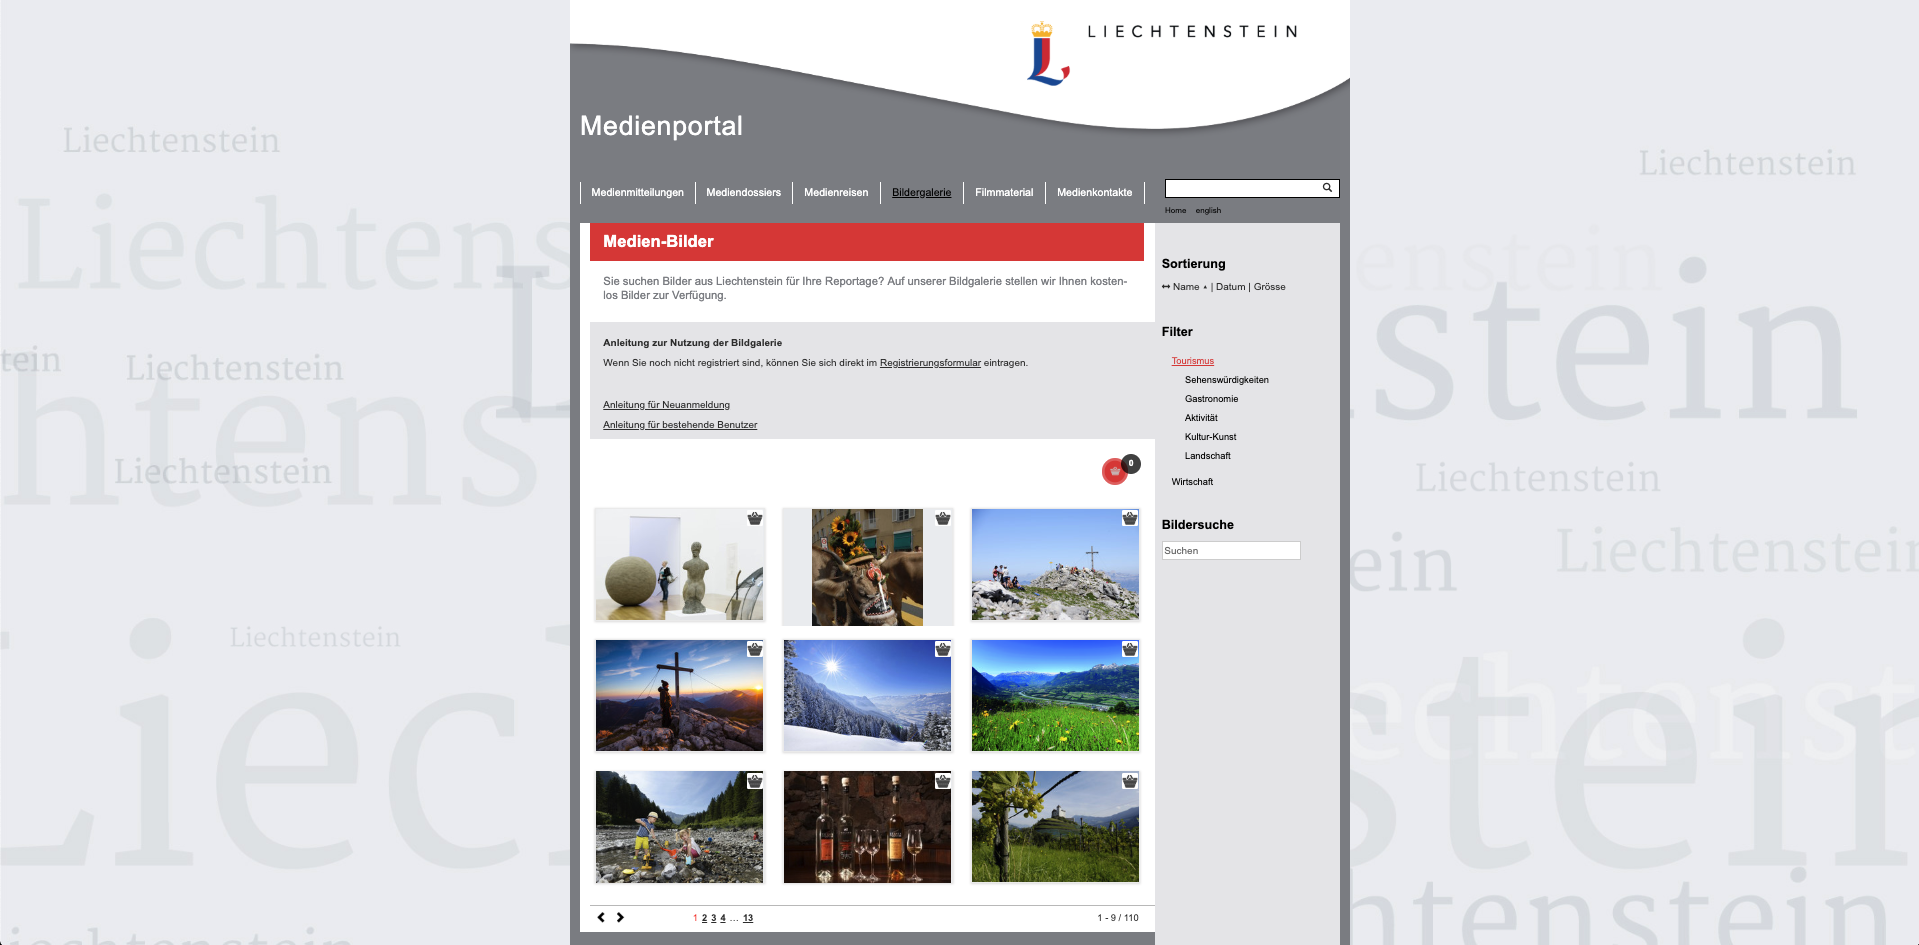 Media Portal Liechtenstein Marketing